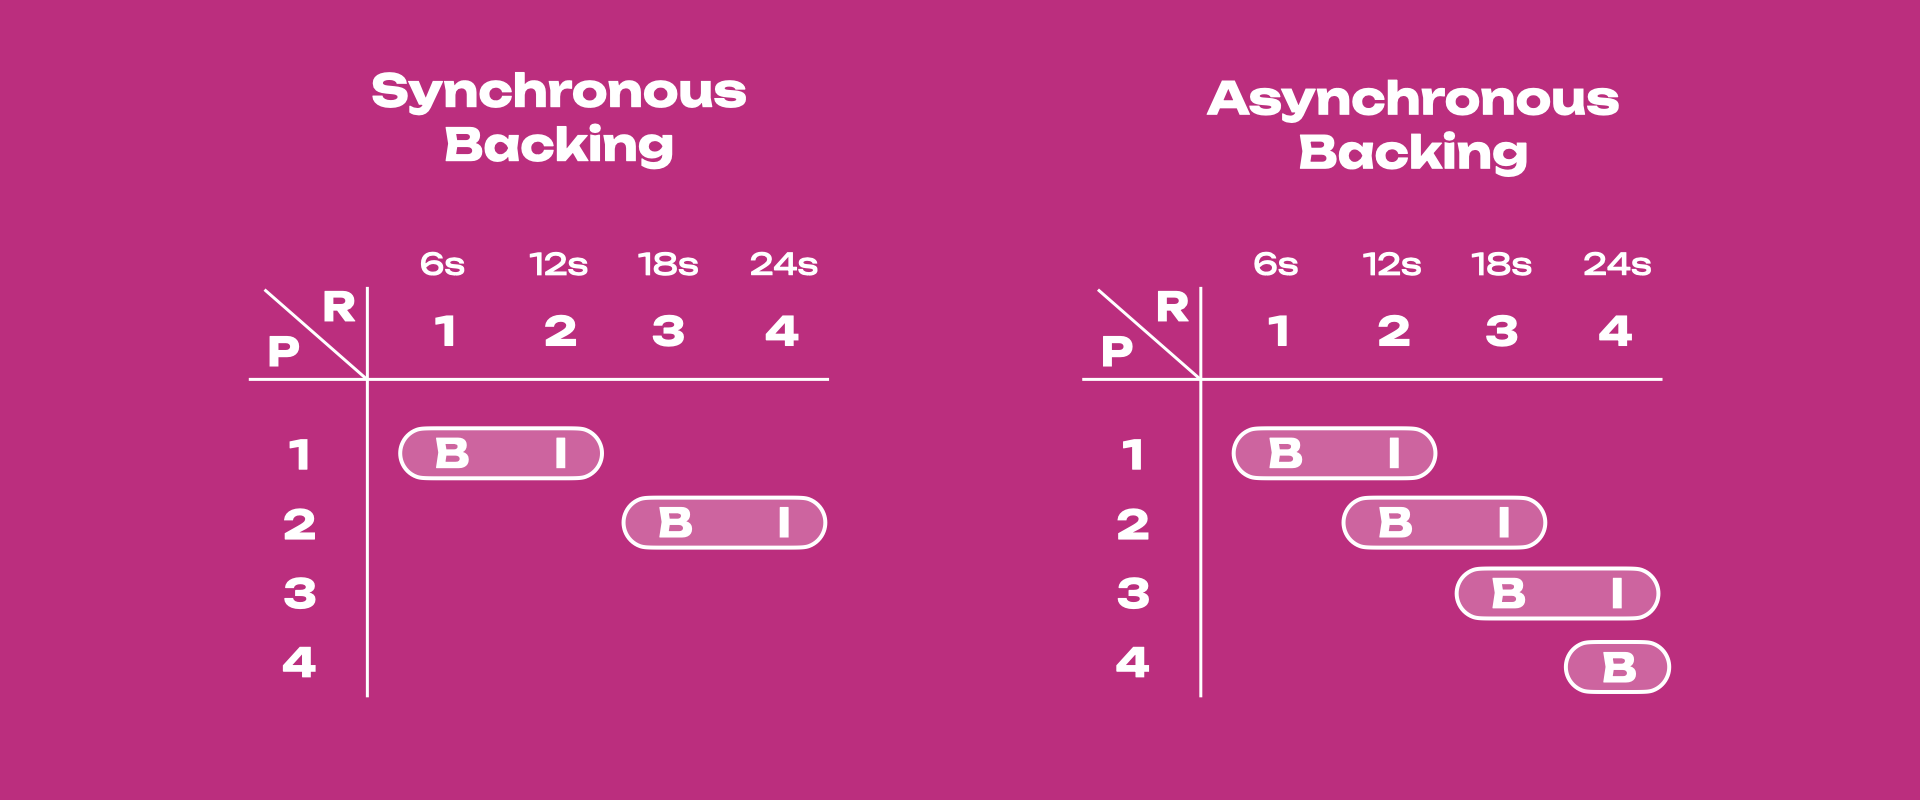 sync-vs-async-backing